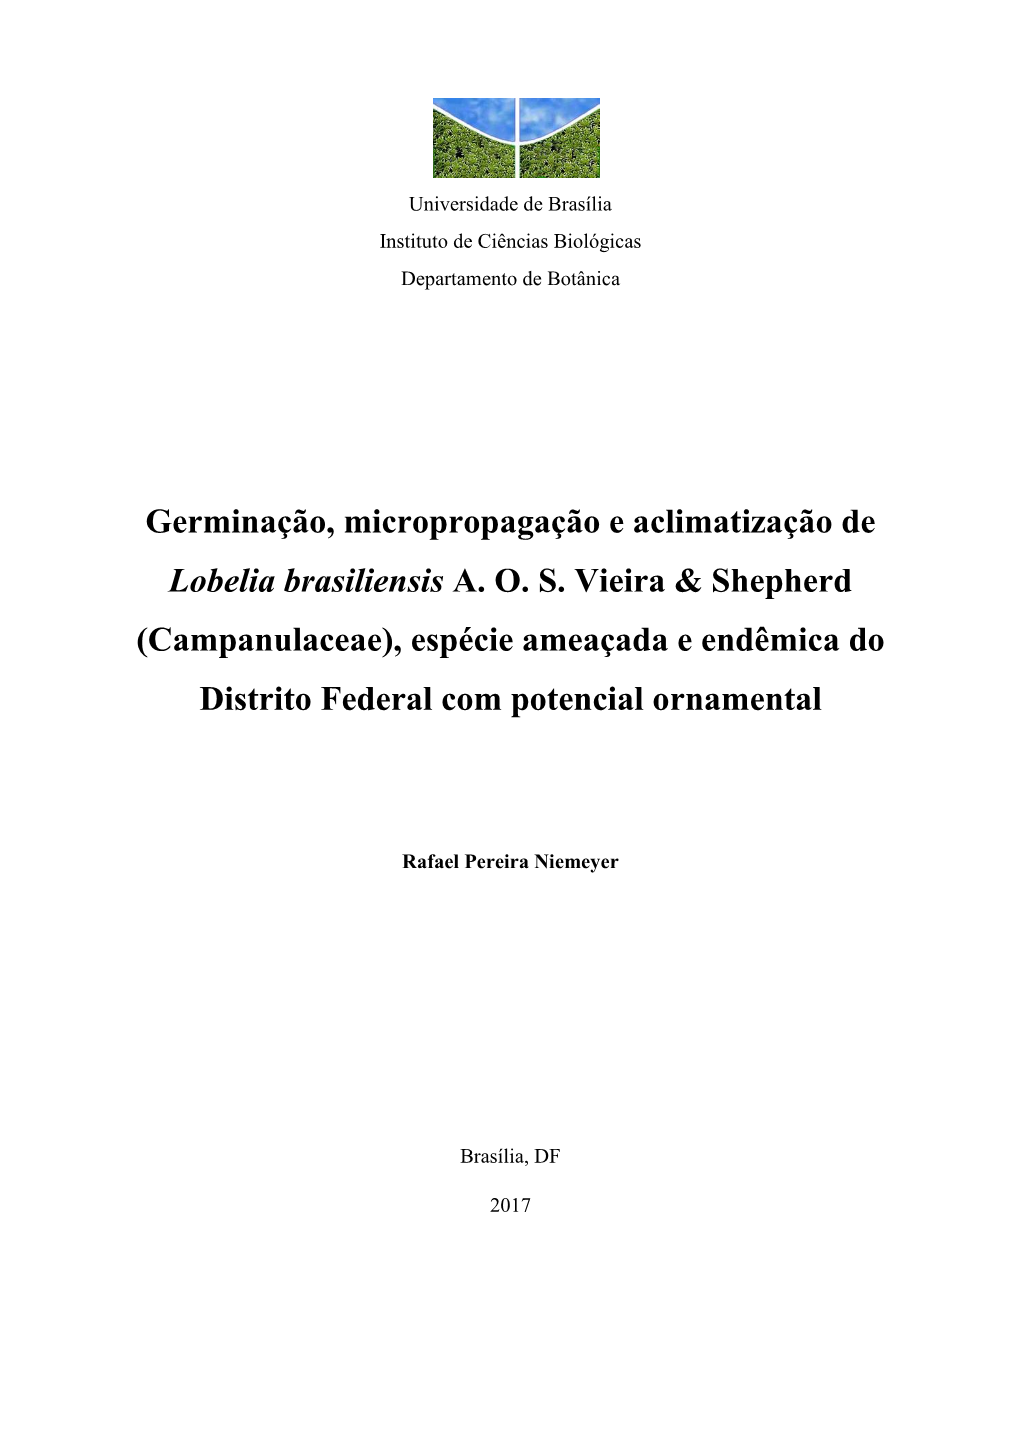 Germinação, Micropropagação E Aclimatização De Lobelia Brasiliensis A